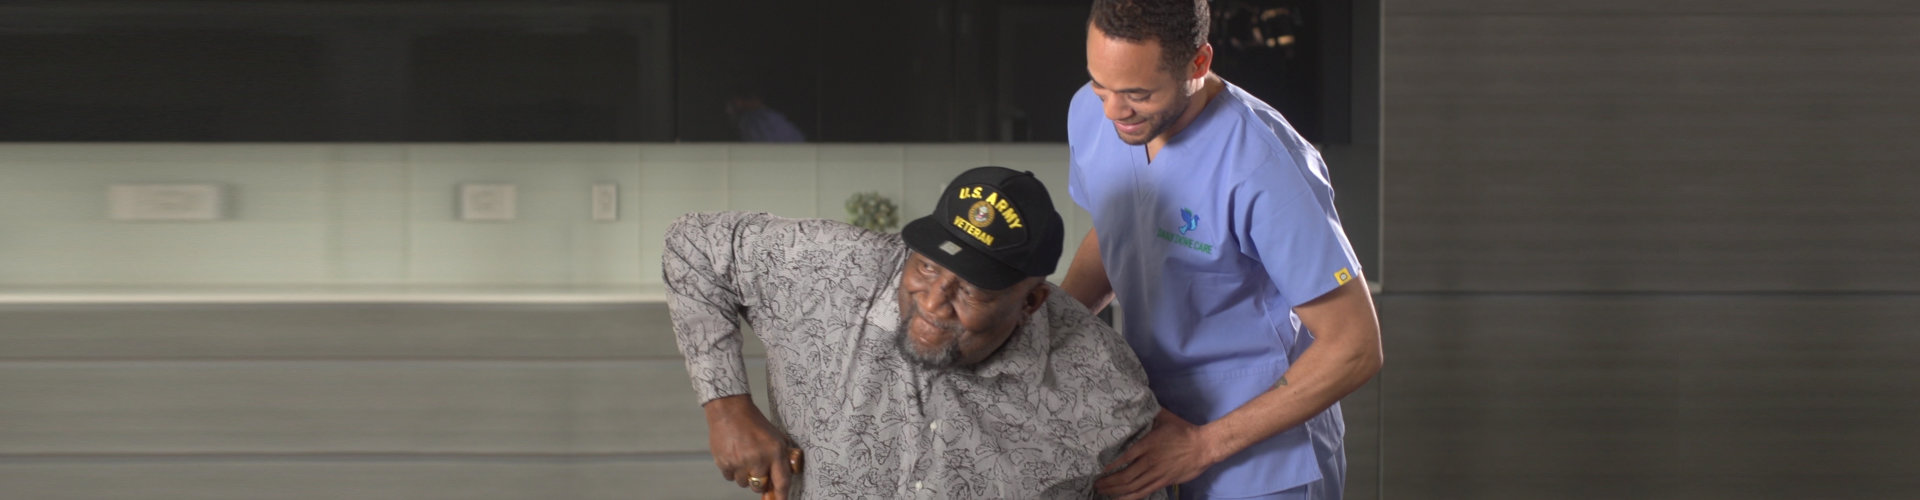 caregiver helping senior man